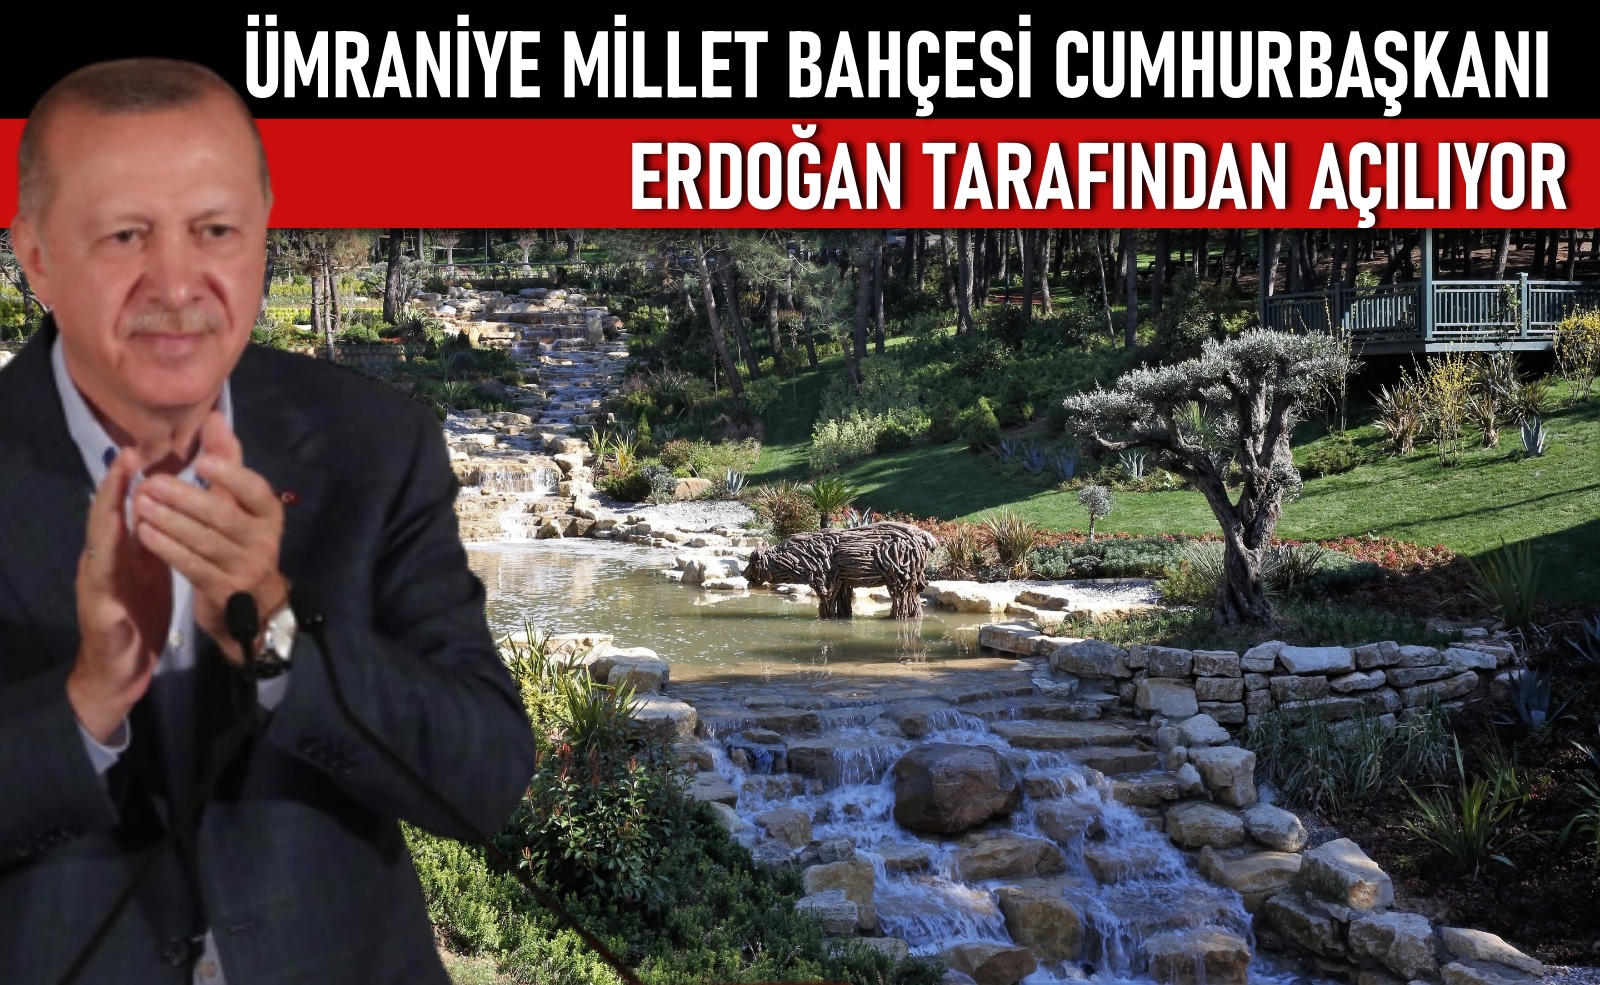 Cumhurbaşkanı Erdoğan Ümraniye’ye geliyor